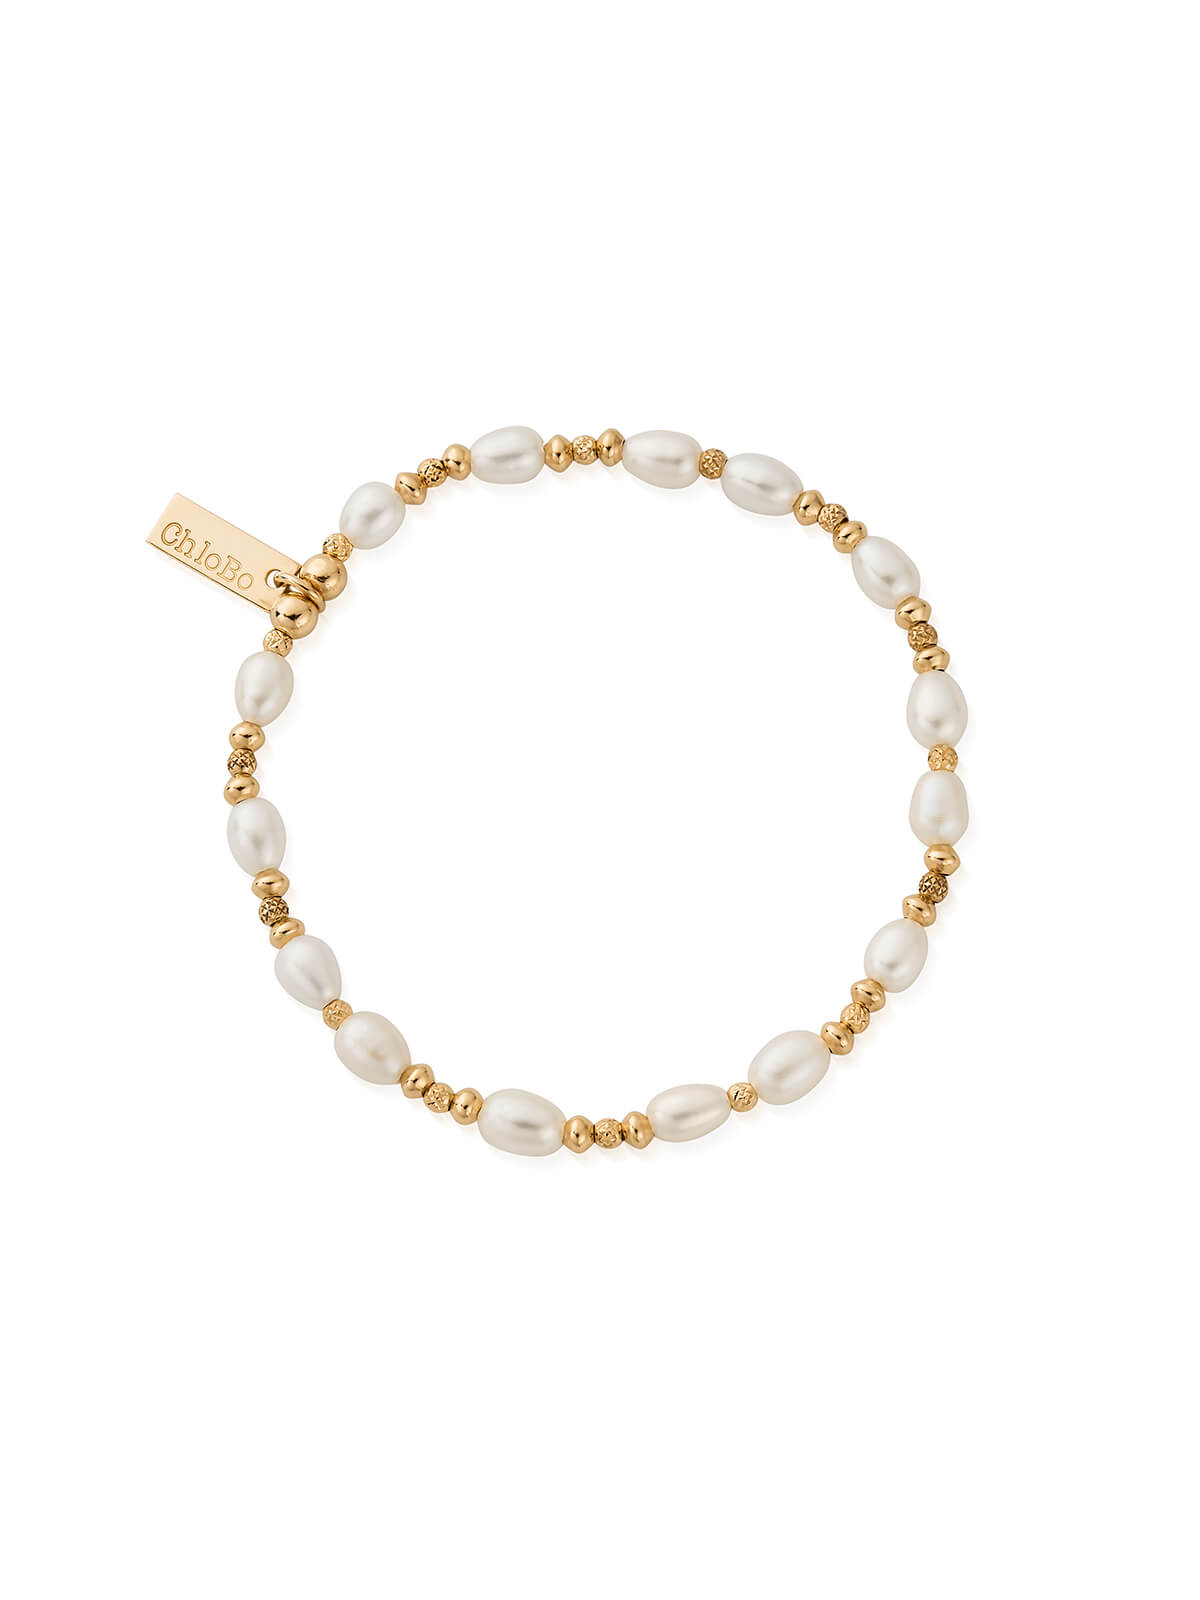 ChloBo Sparkle Pearl Bracelet in Gold Plating GBSPFB